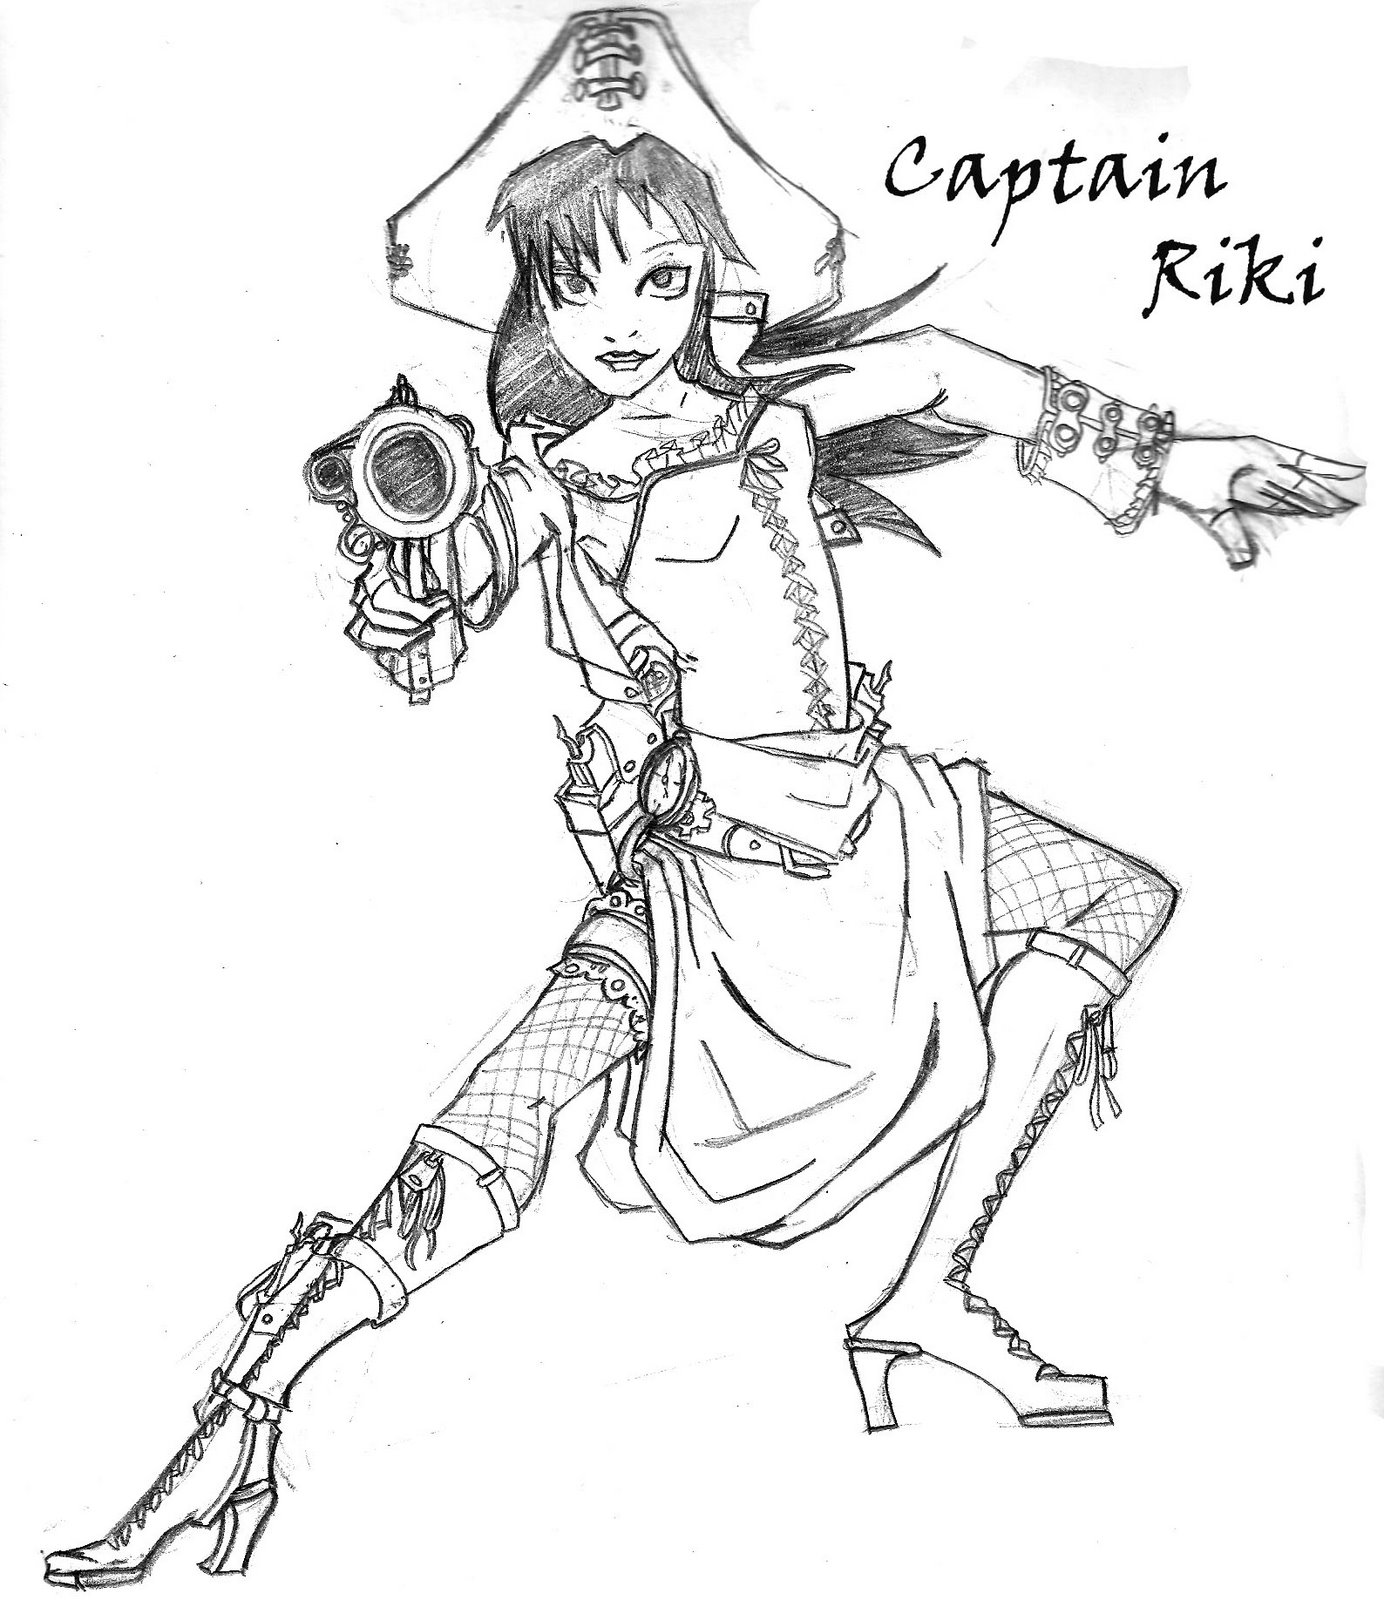 [Capt.+Riki+copy.jpg]